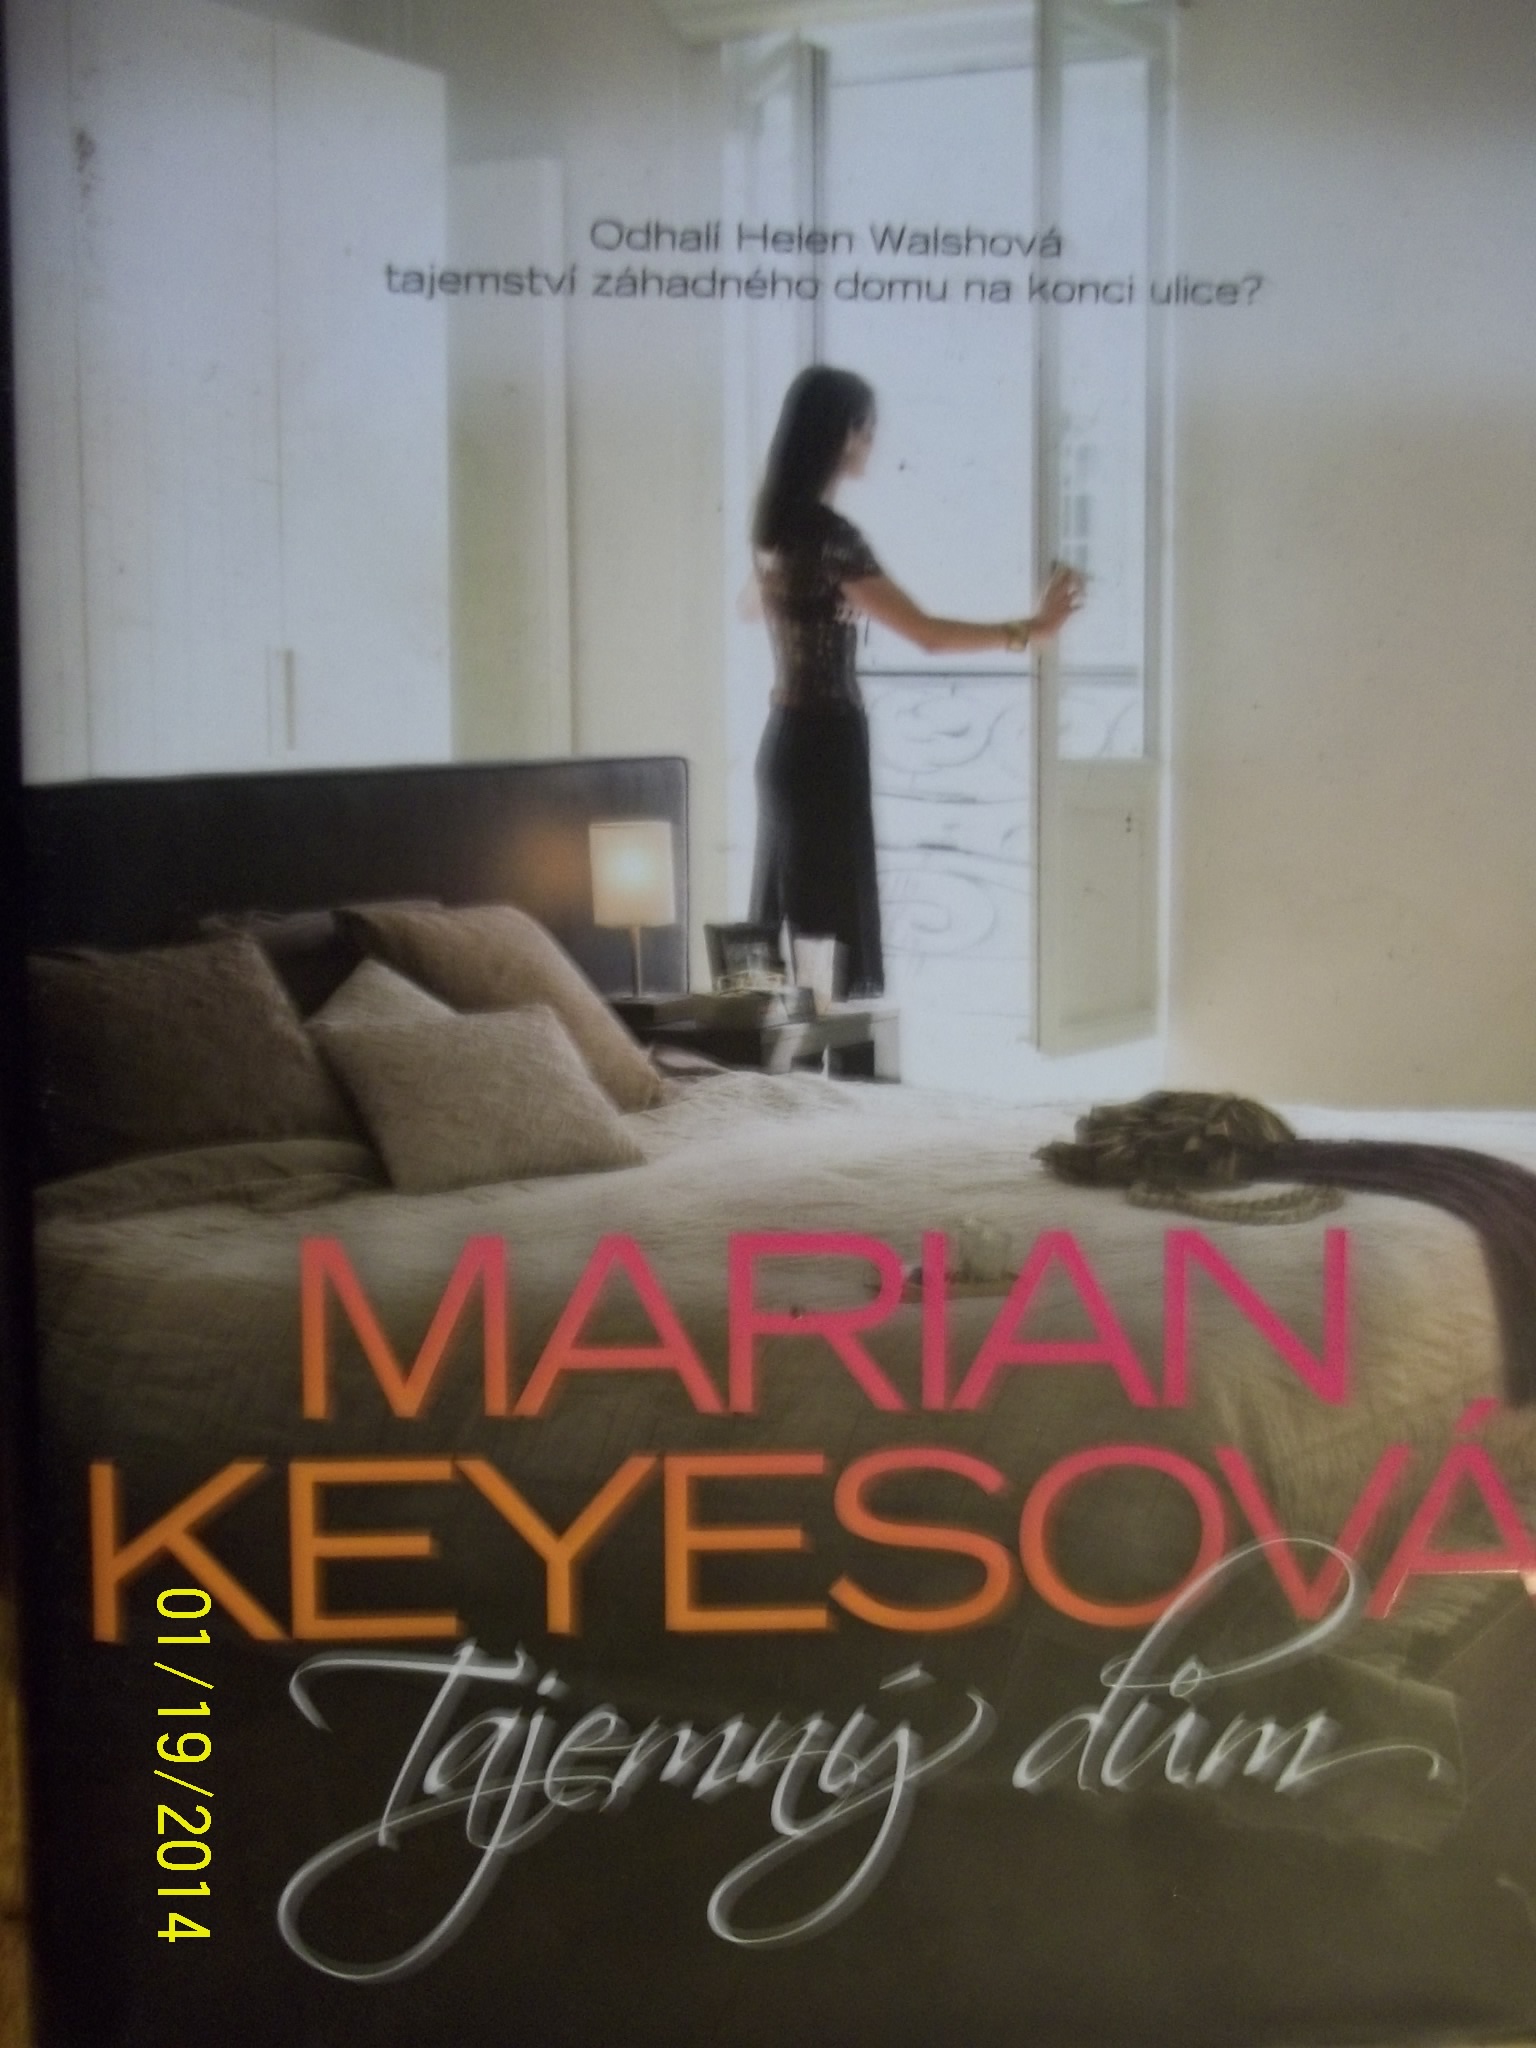 zobrazit detail knihy Keyesov, Marian. : Tajemn dm